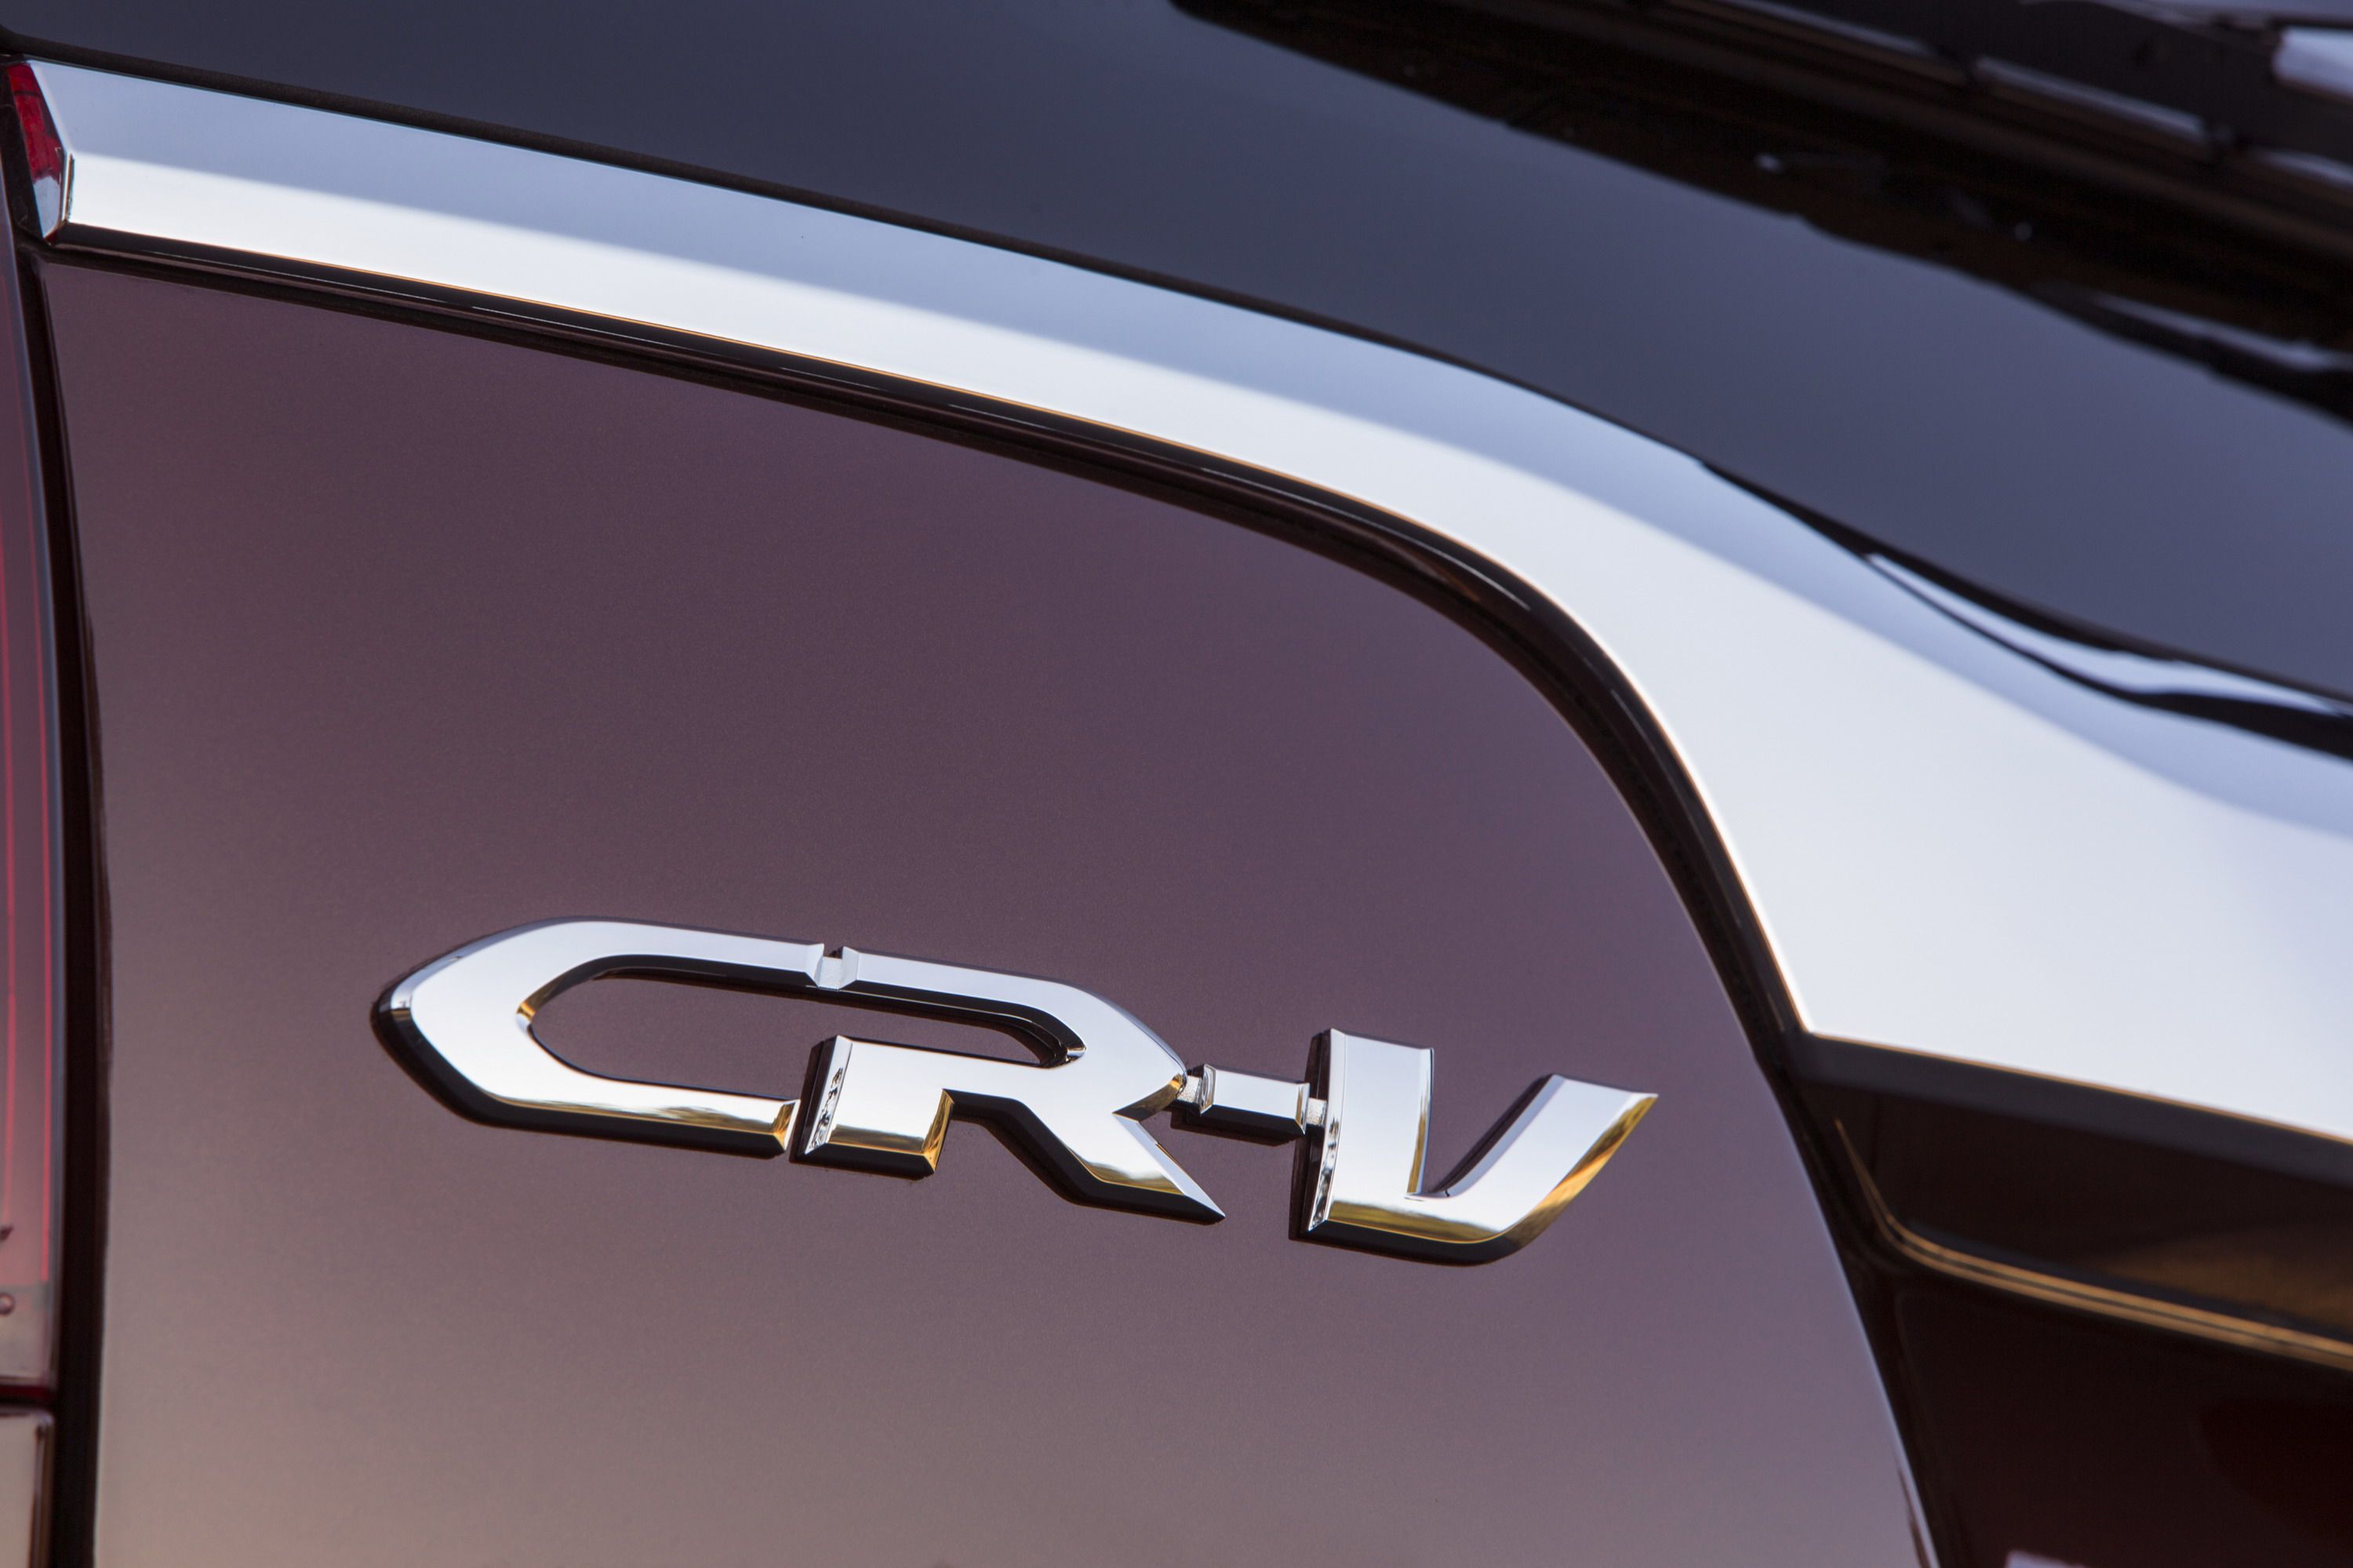 2015 - 2016 Honda CR-V